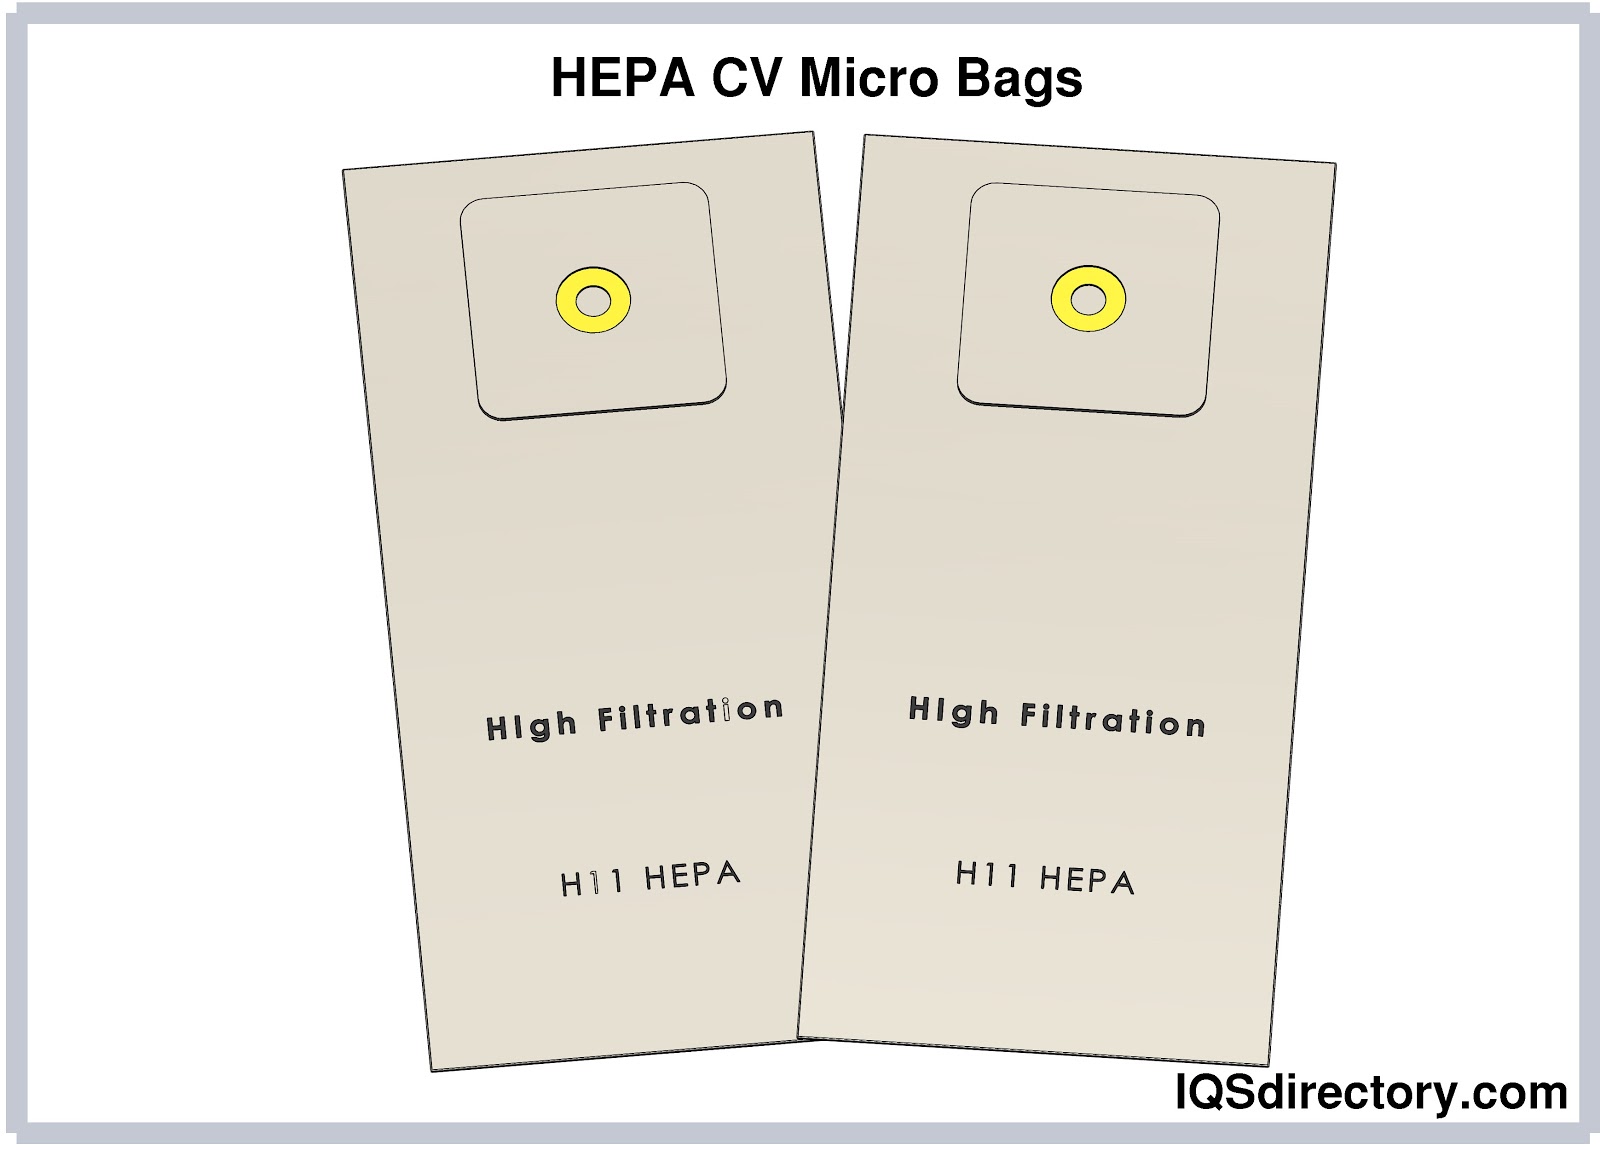 HEPA CV Micro Bags